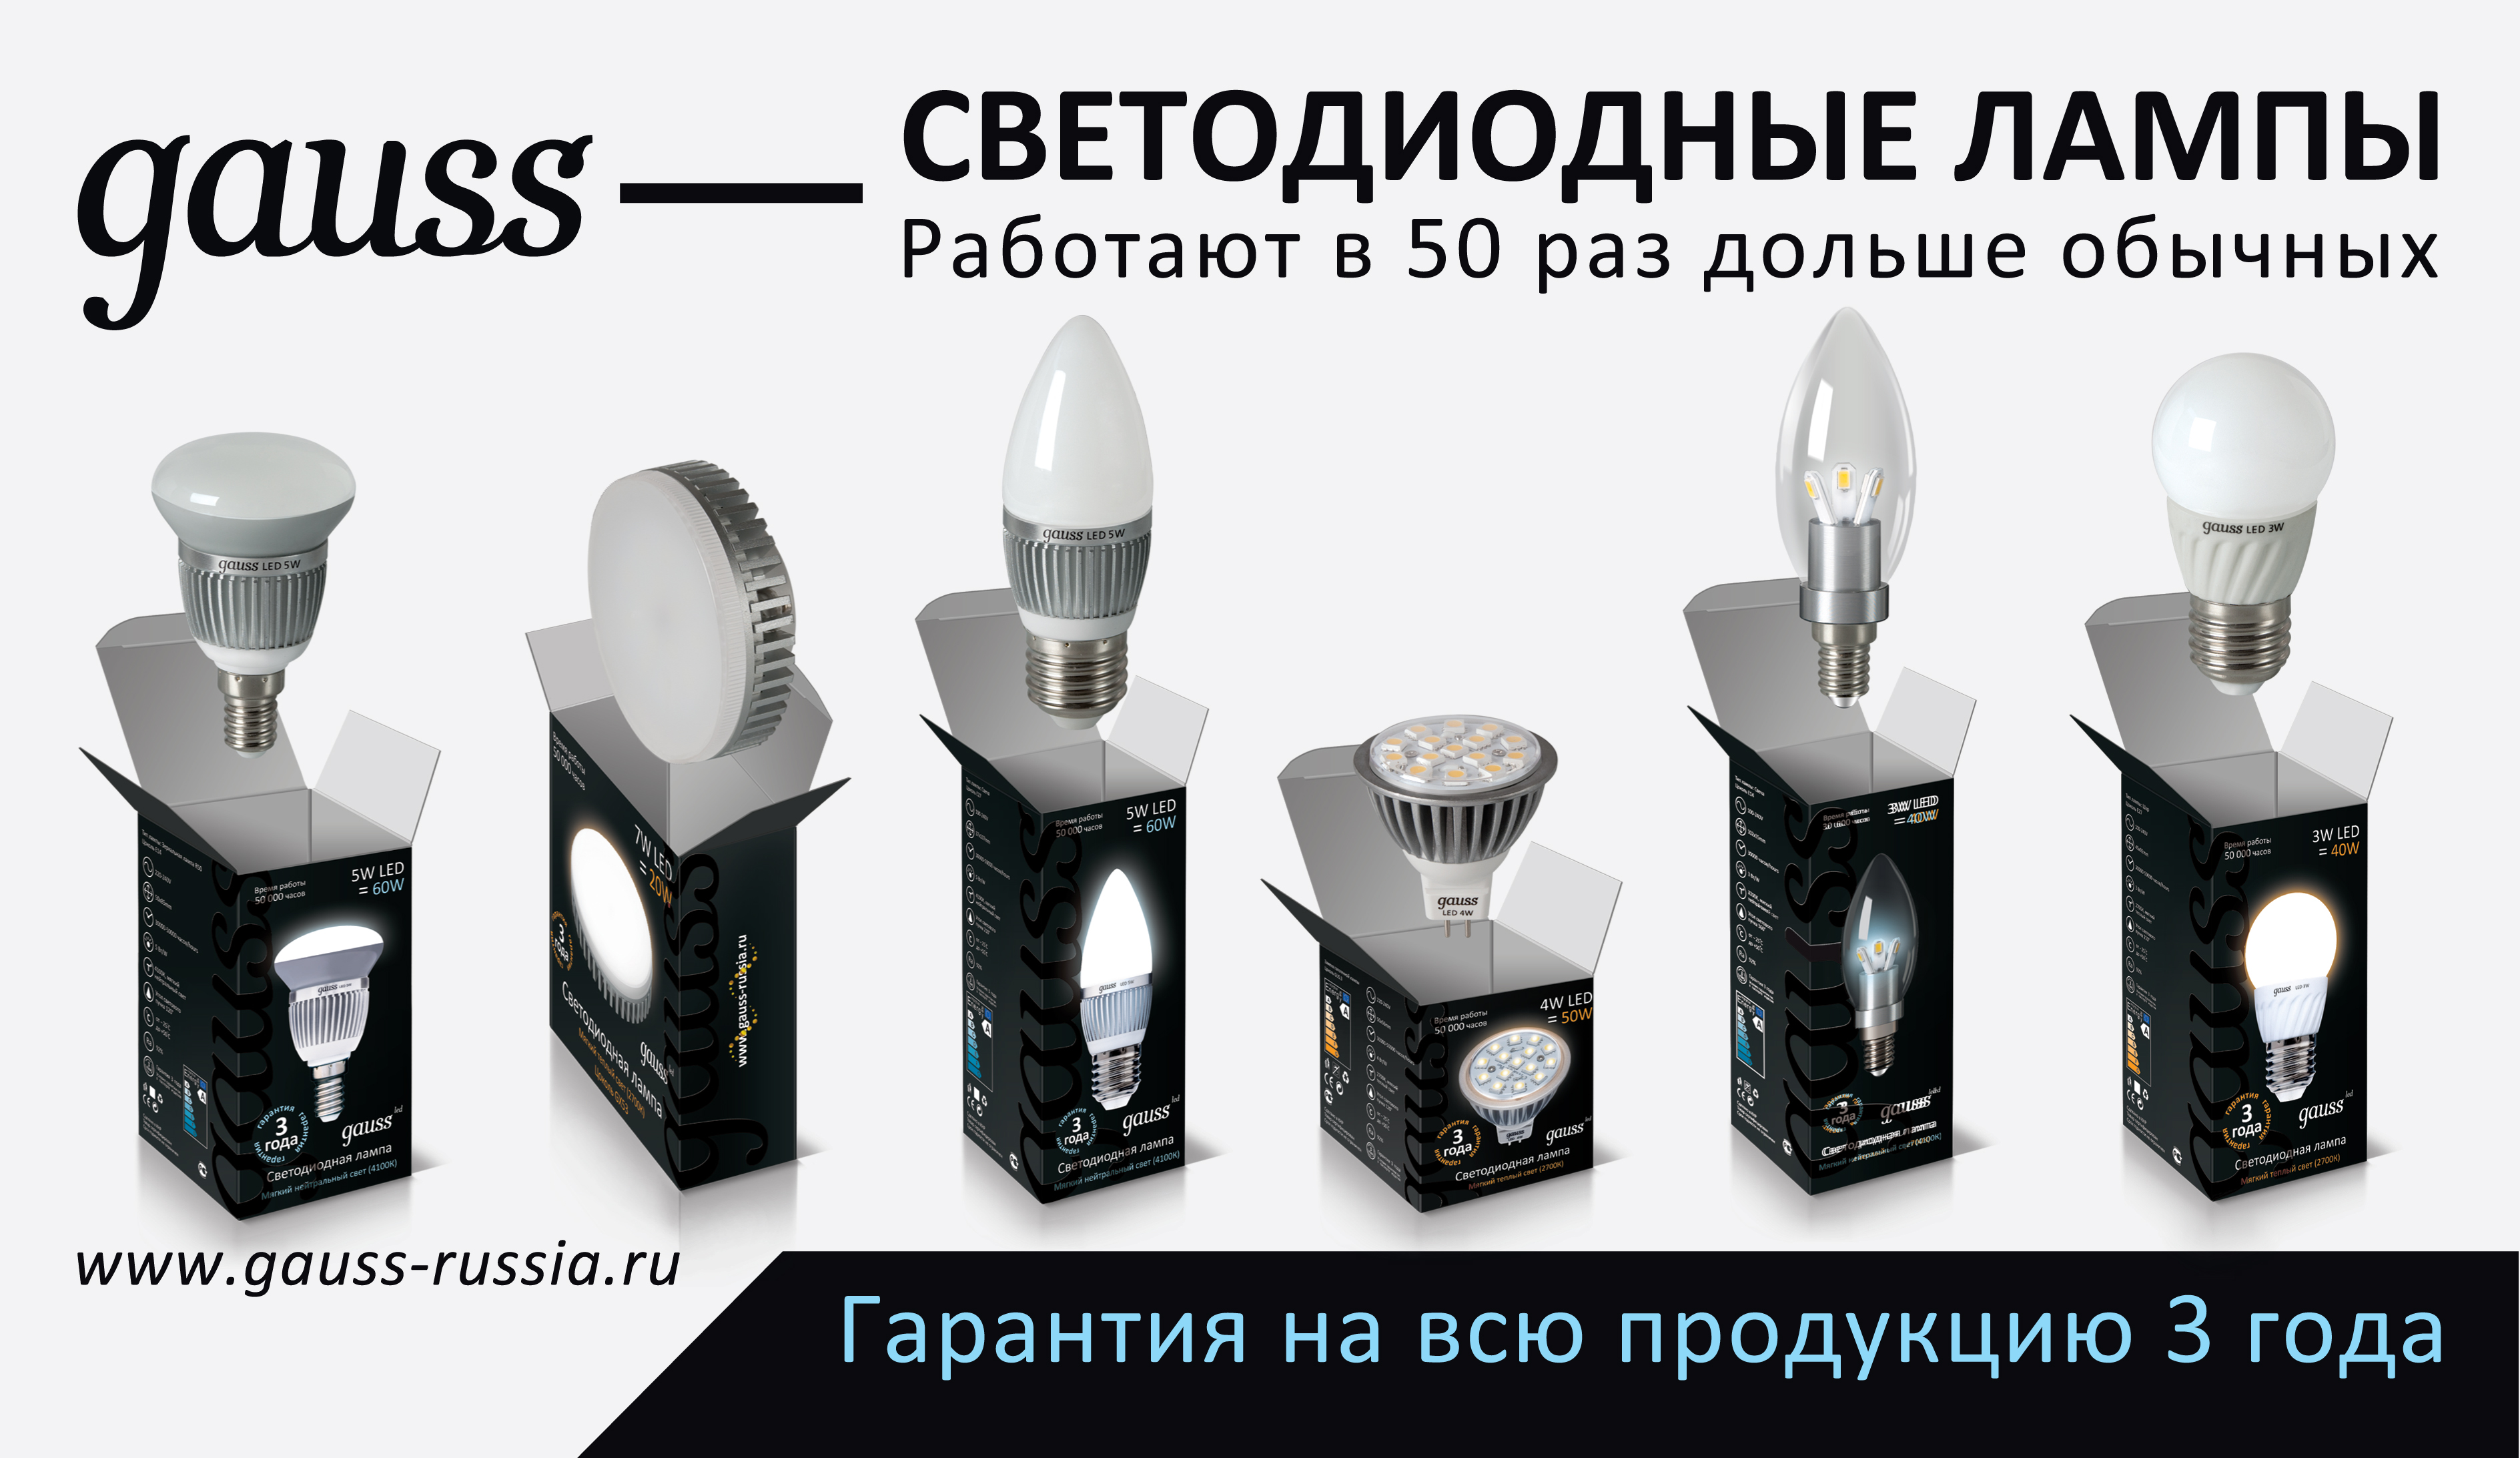 Реклама светодиодных ламп gauss